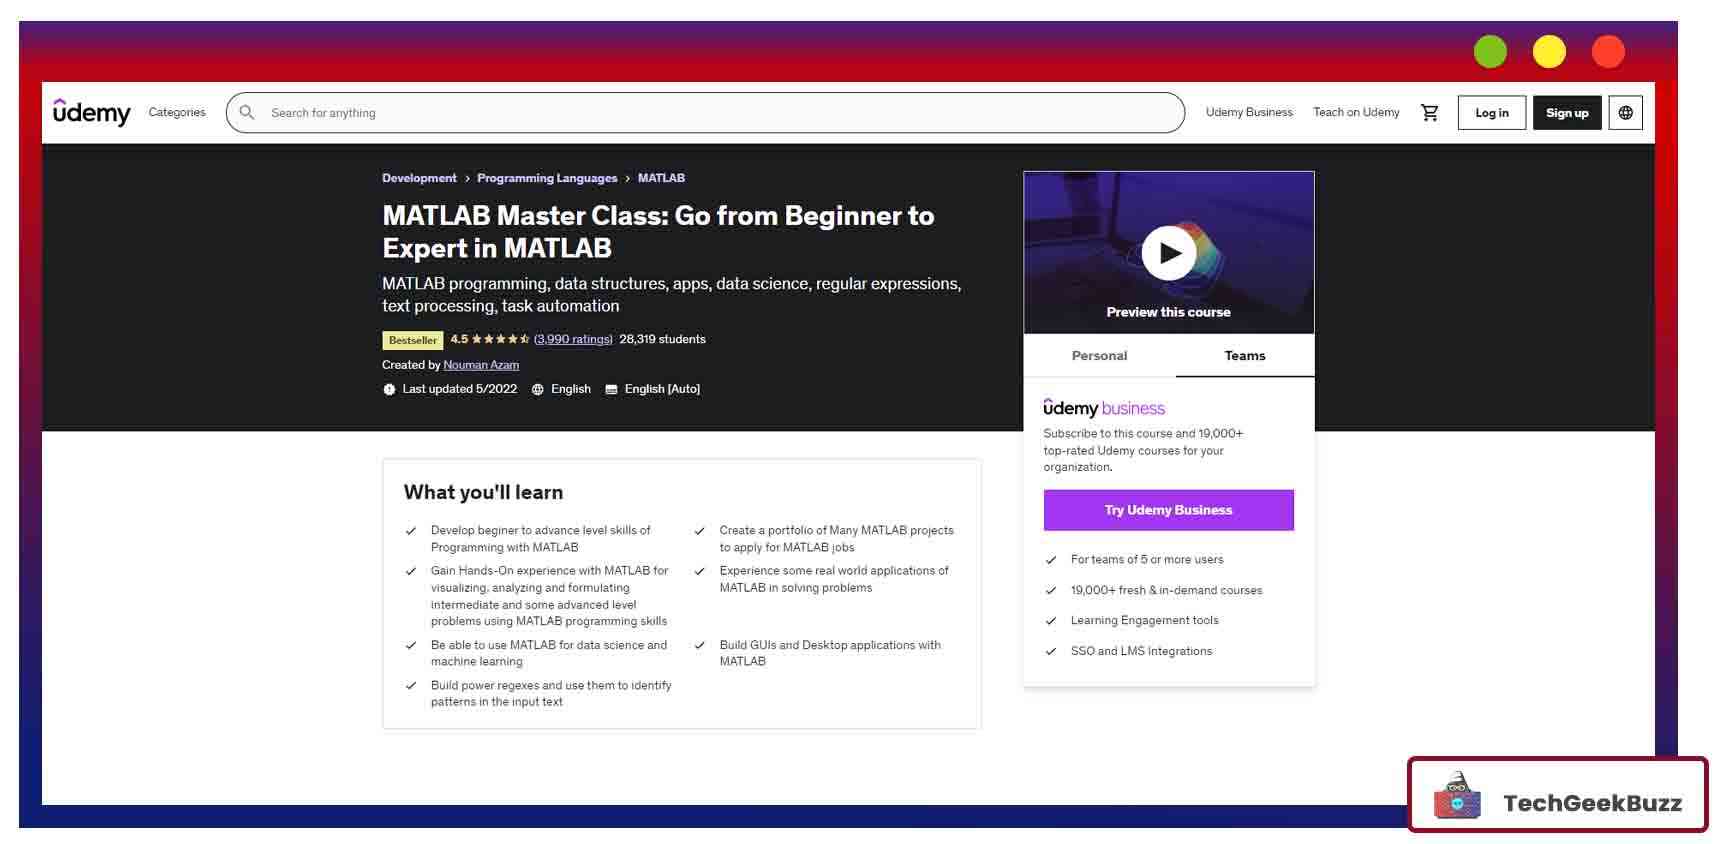 MATLAB Master Class: Go from Beginner to Expert in MATLAB